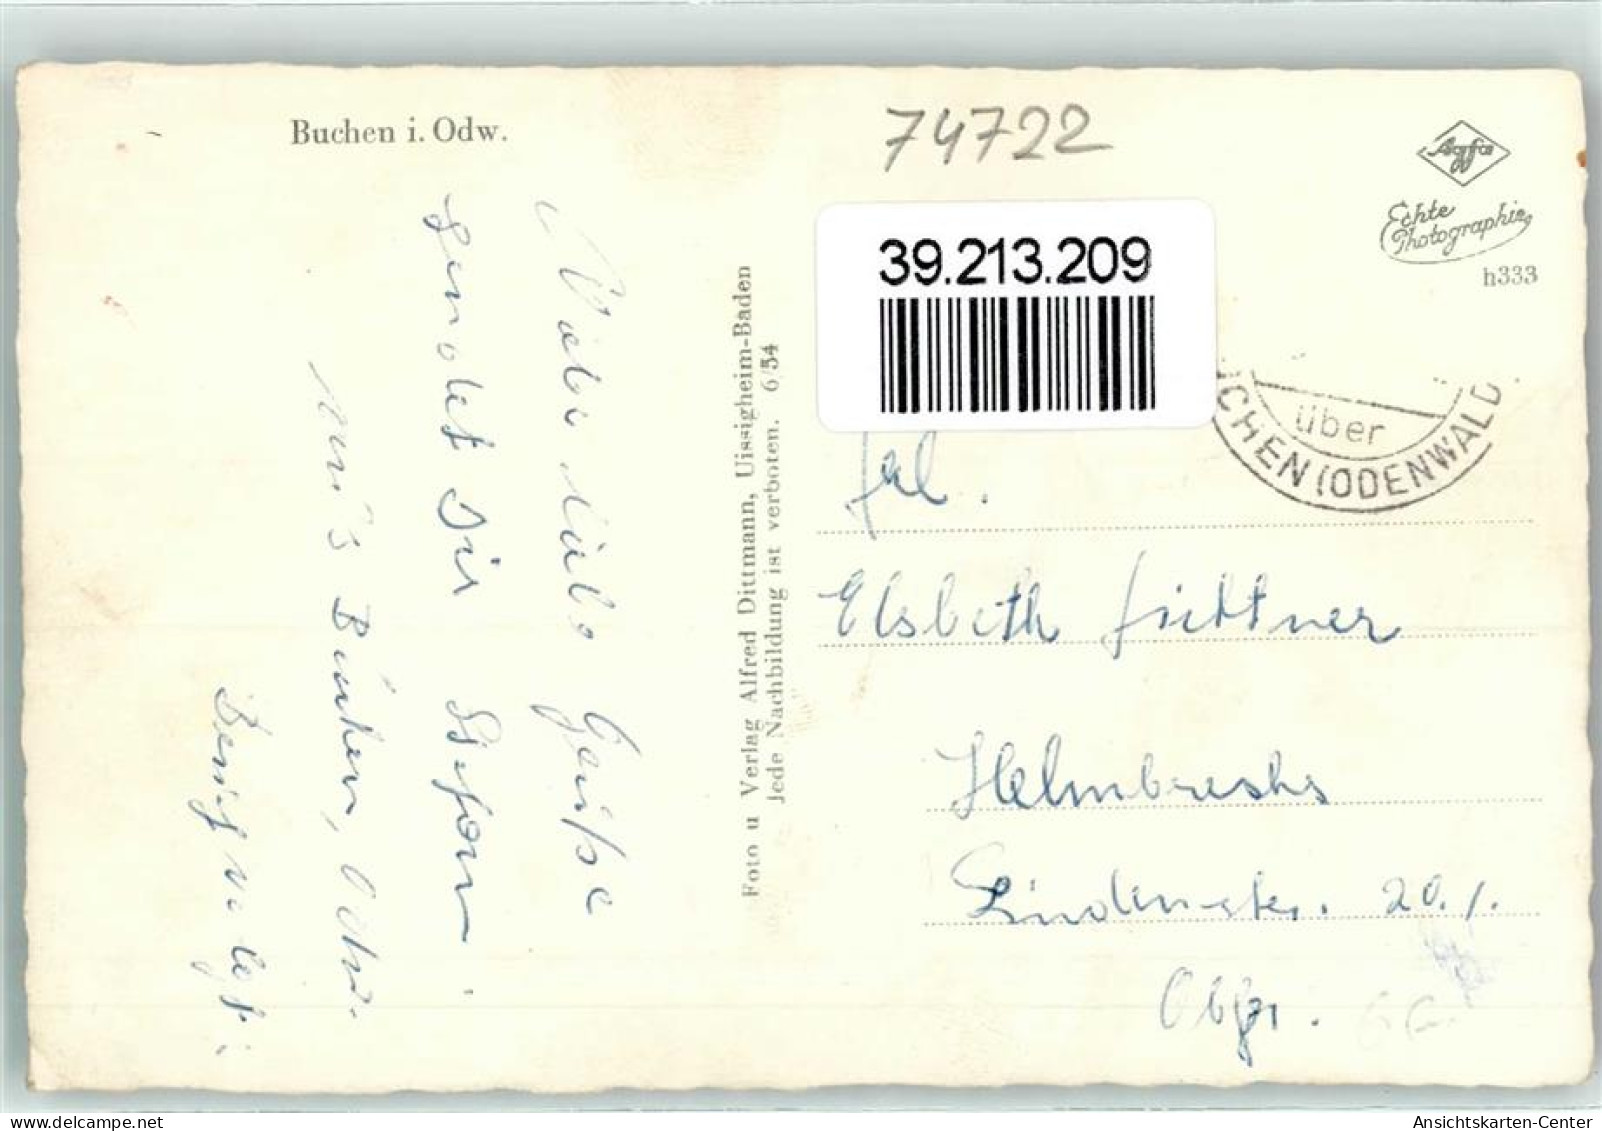 39213209 - Buchen Odenwald - Buchen